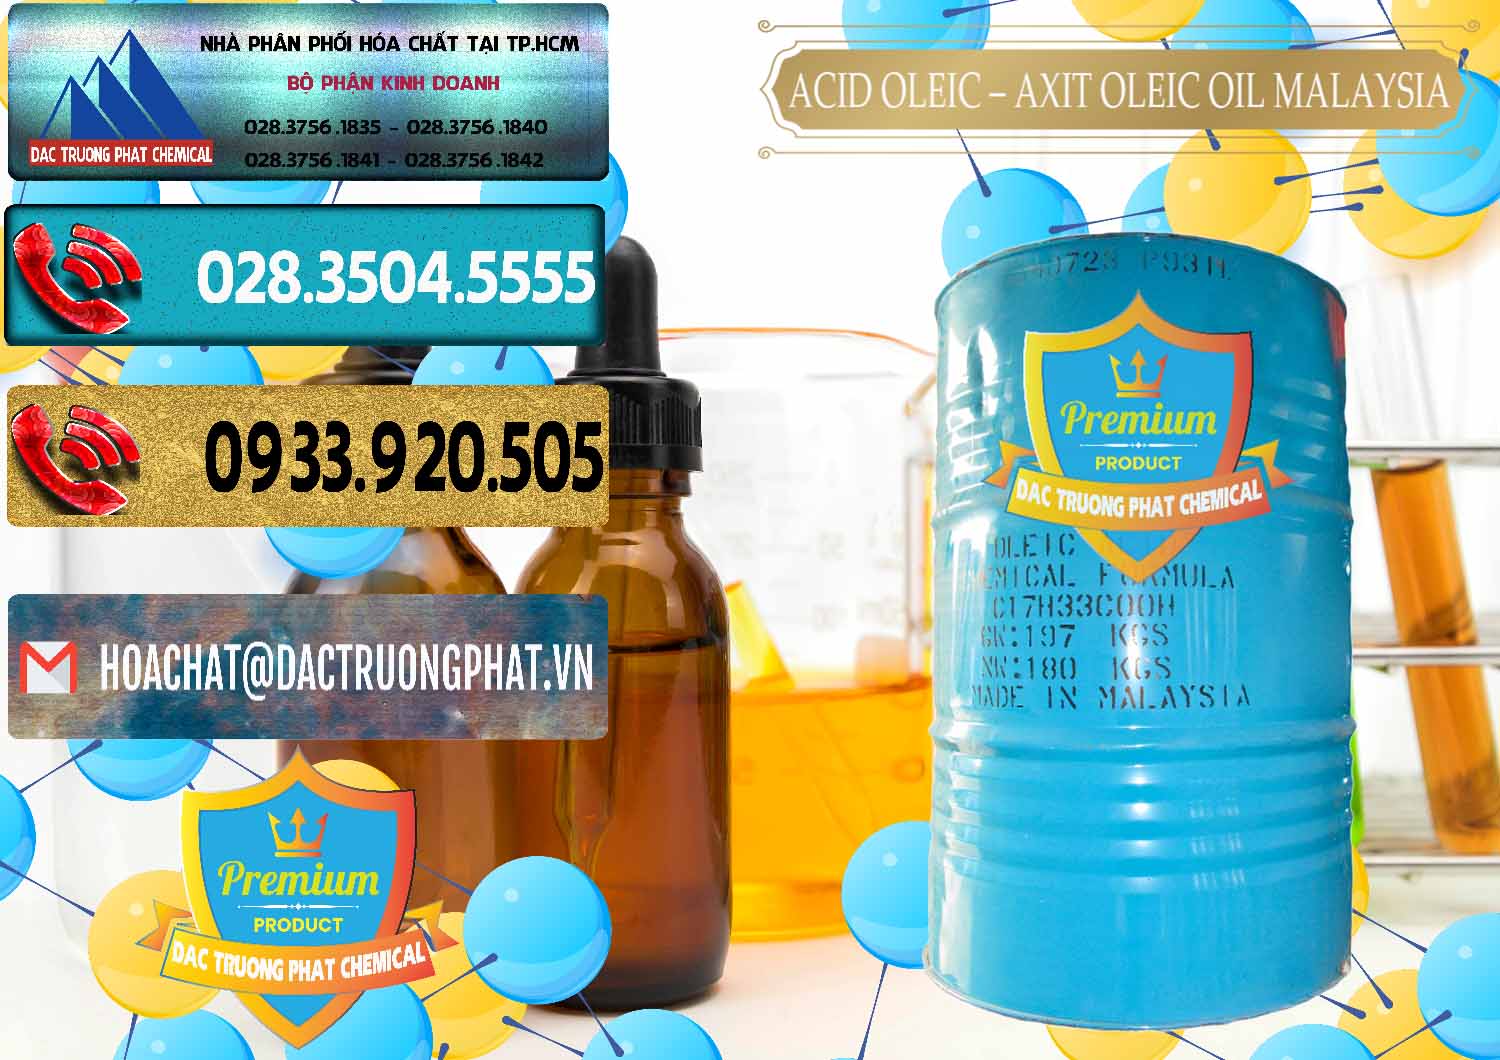 Chuyên bán _ cung ứng Acid Oleic – Axit Oleic Oil Malaysia - 0013 - Nhà phân phối ( cung ứng ) hóa chất tại TP.HCM - hoachatdetnhuom.com